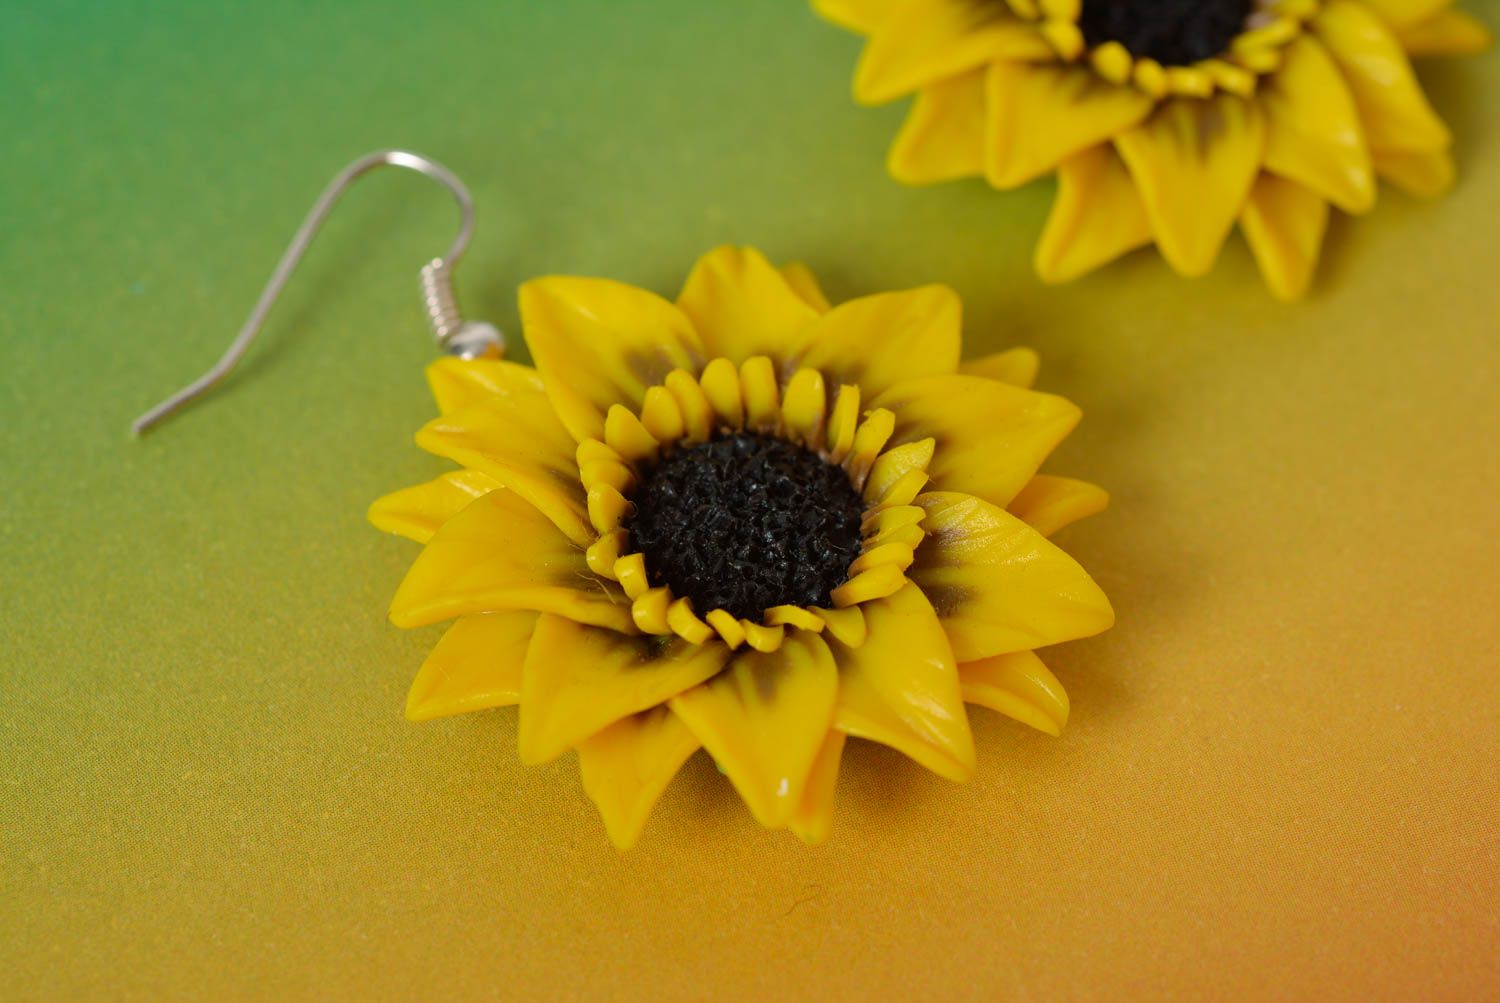 Серьги ручной работы в виде цветков подсолнухов из полимерной глины желтые фото 3